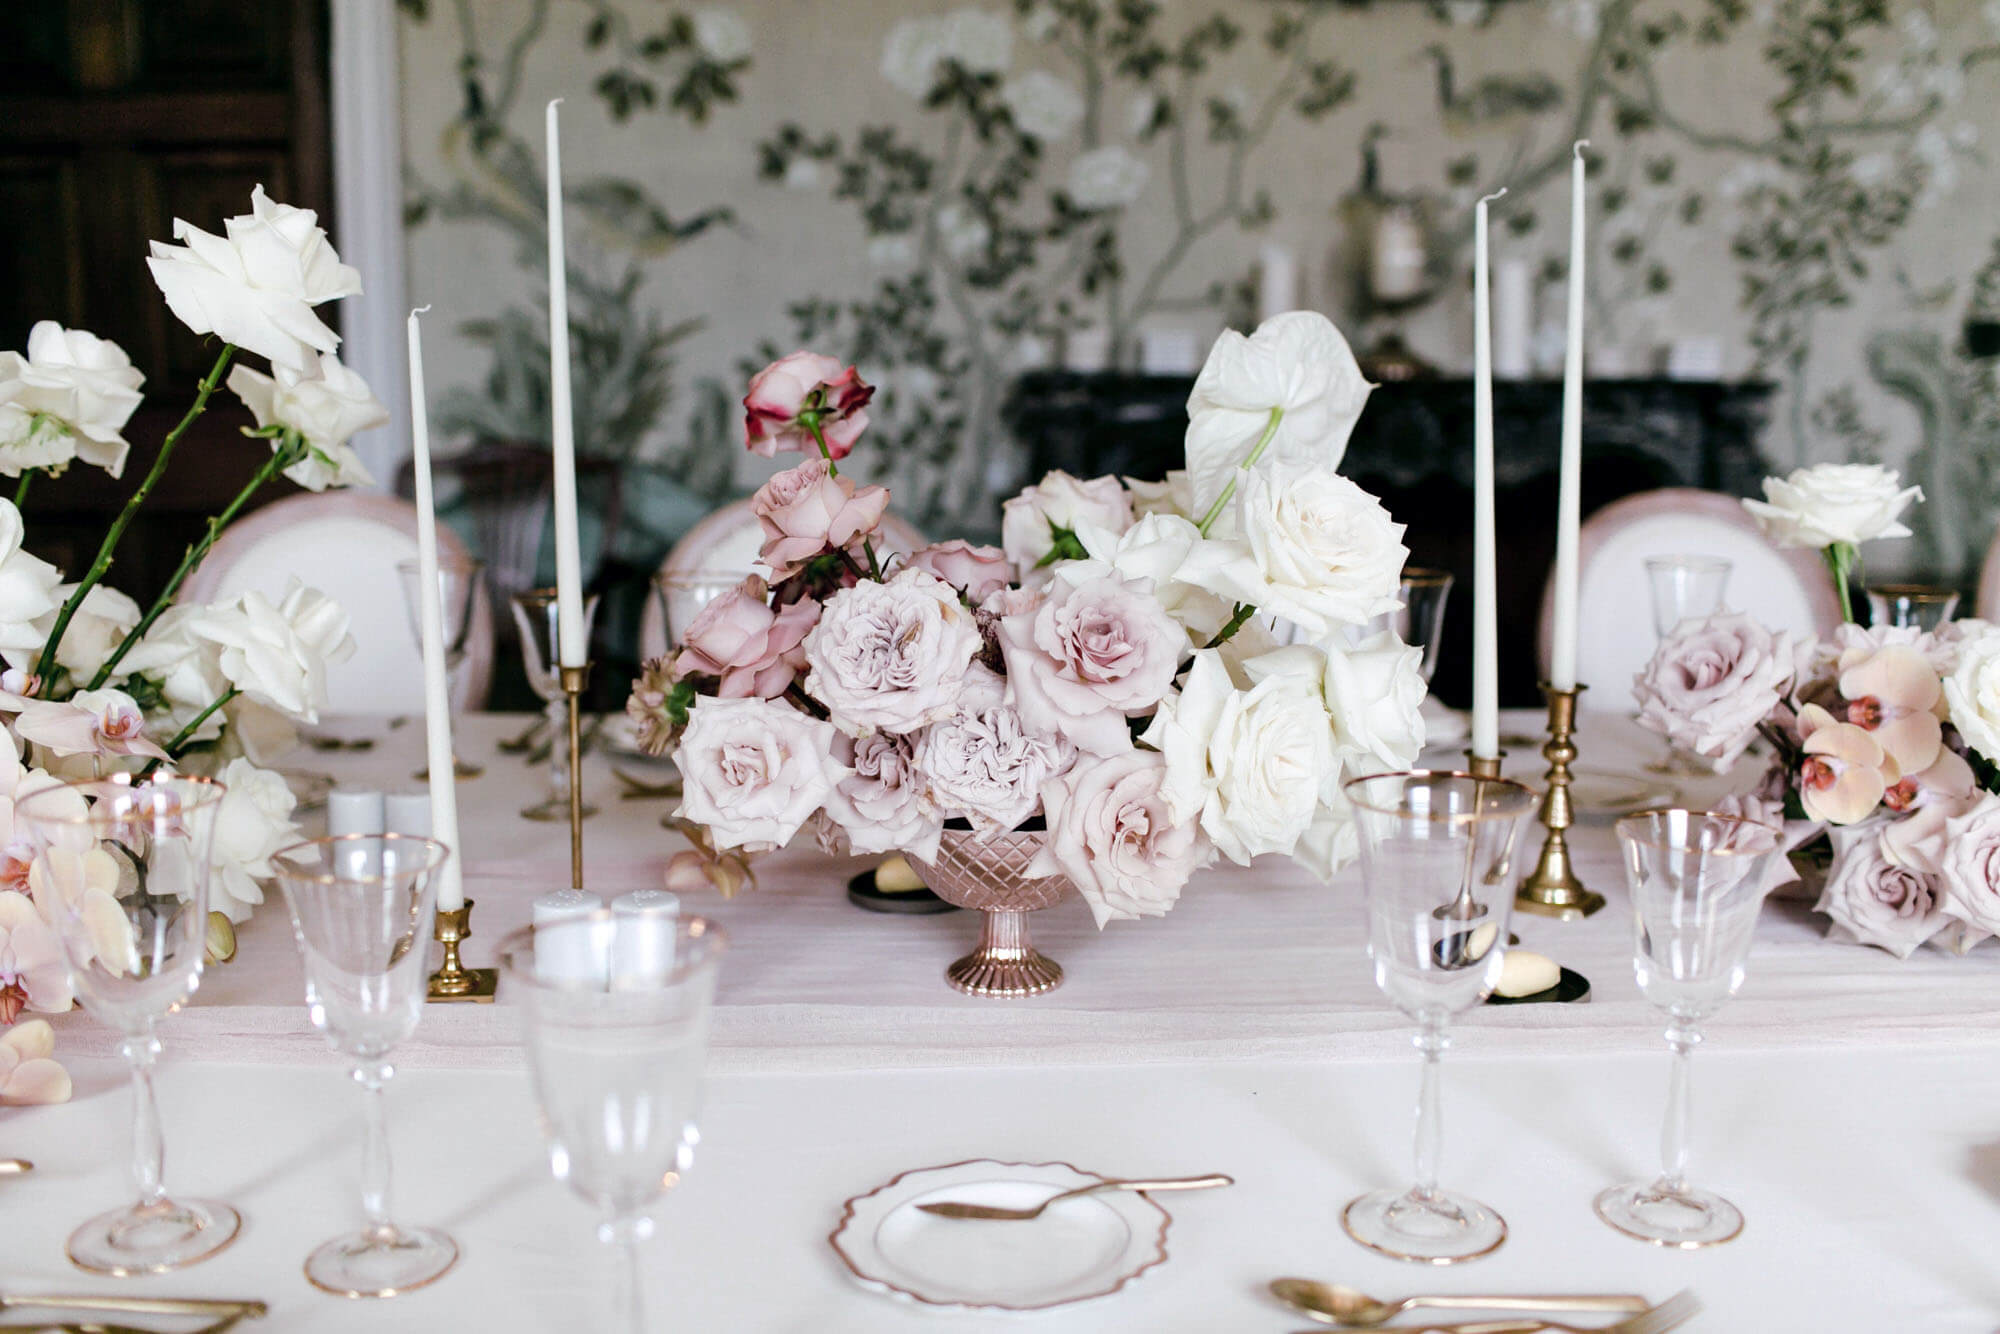 Decoración de una mesa con arreglos florales para una boda de lujo